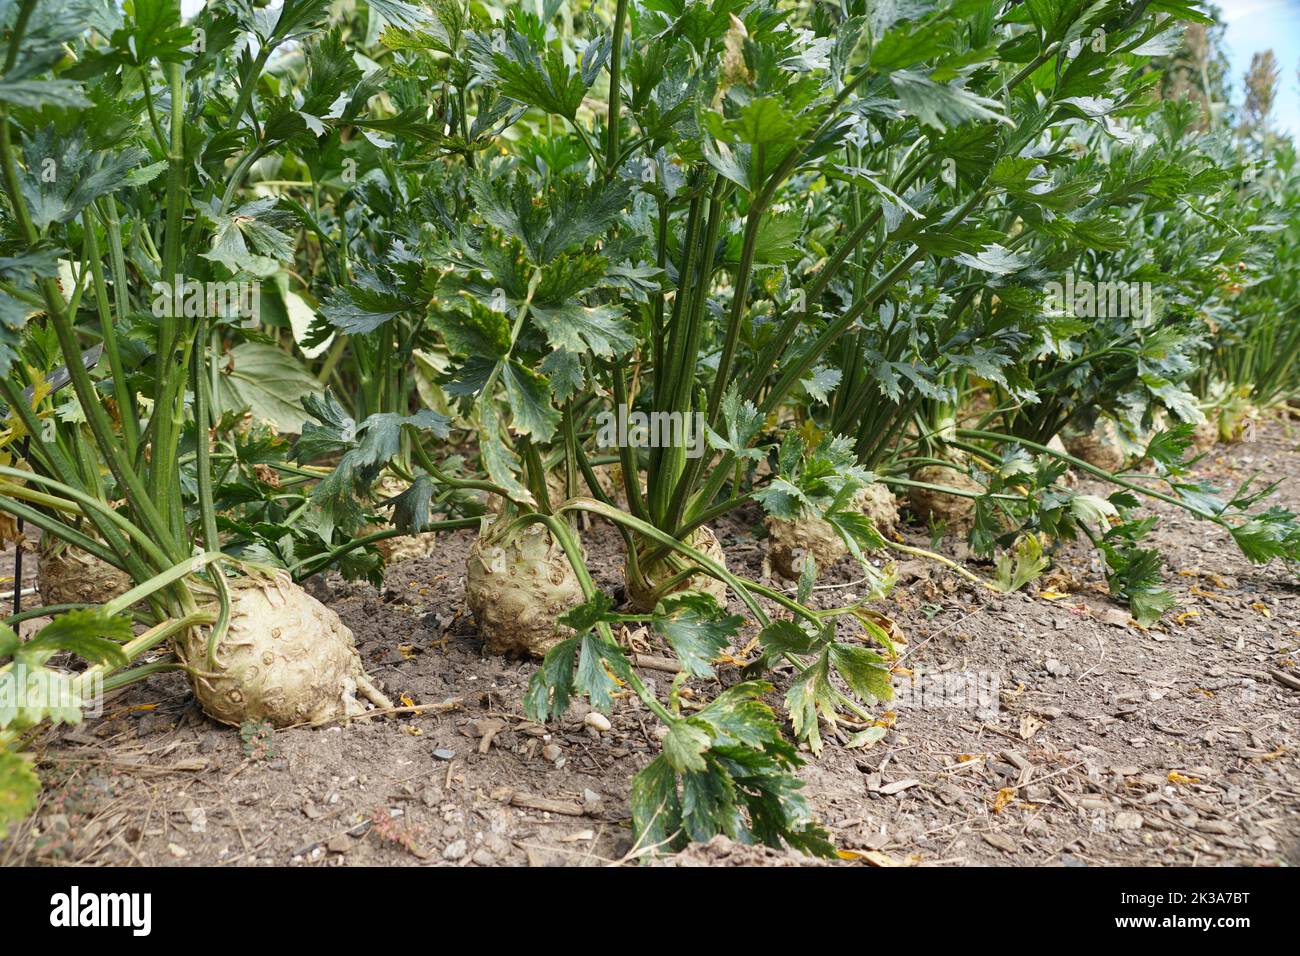 A row of Celeriac in the garden, also known as Celery Root, an edible vegetable Stock Photo